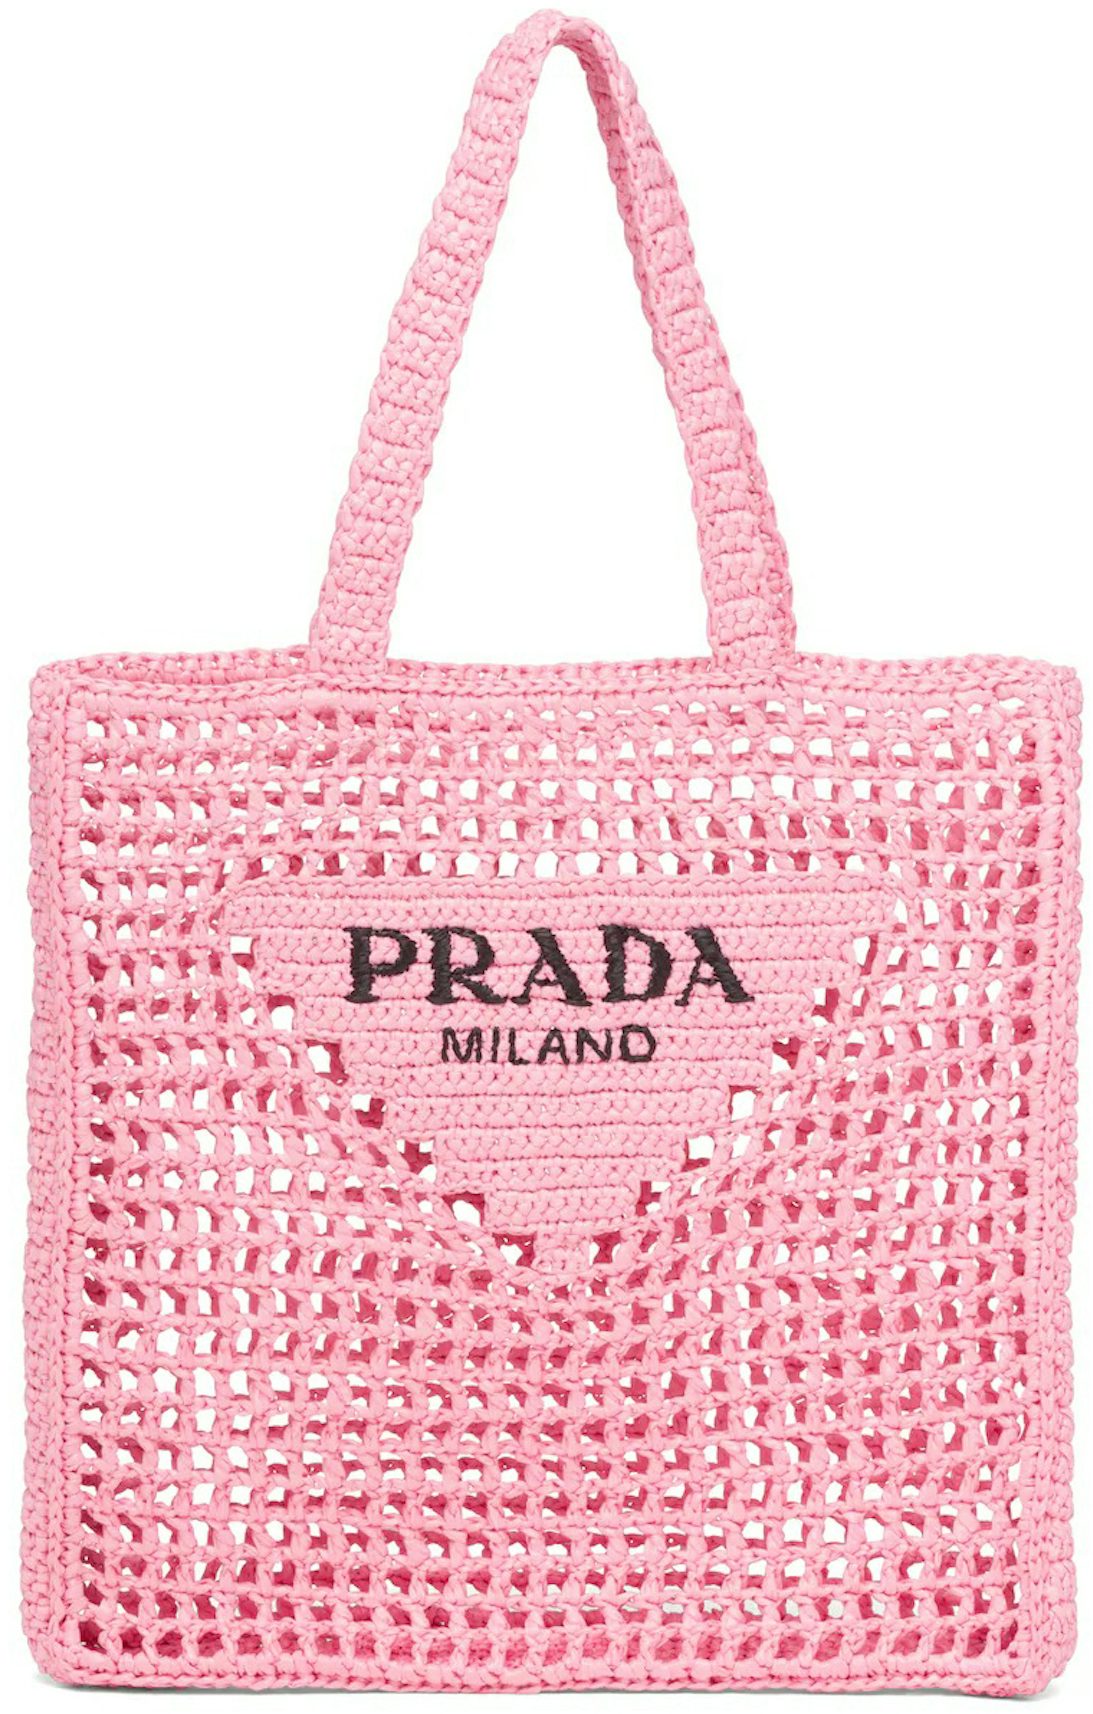 Prada Re-Edition 2005 Raffia Bag Petal Pink in Raffia with Gold